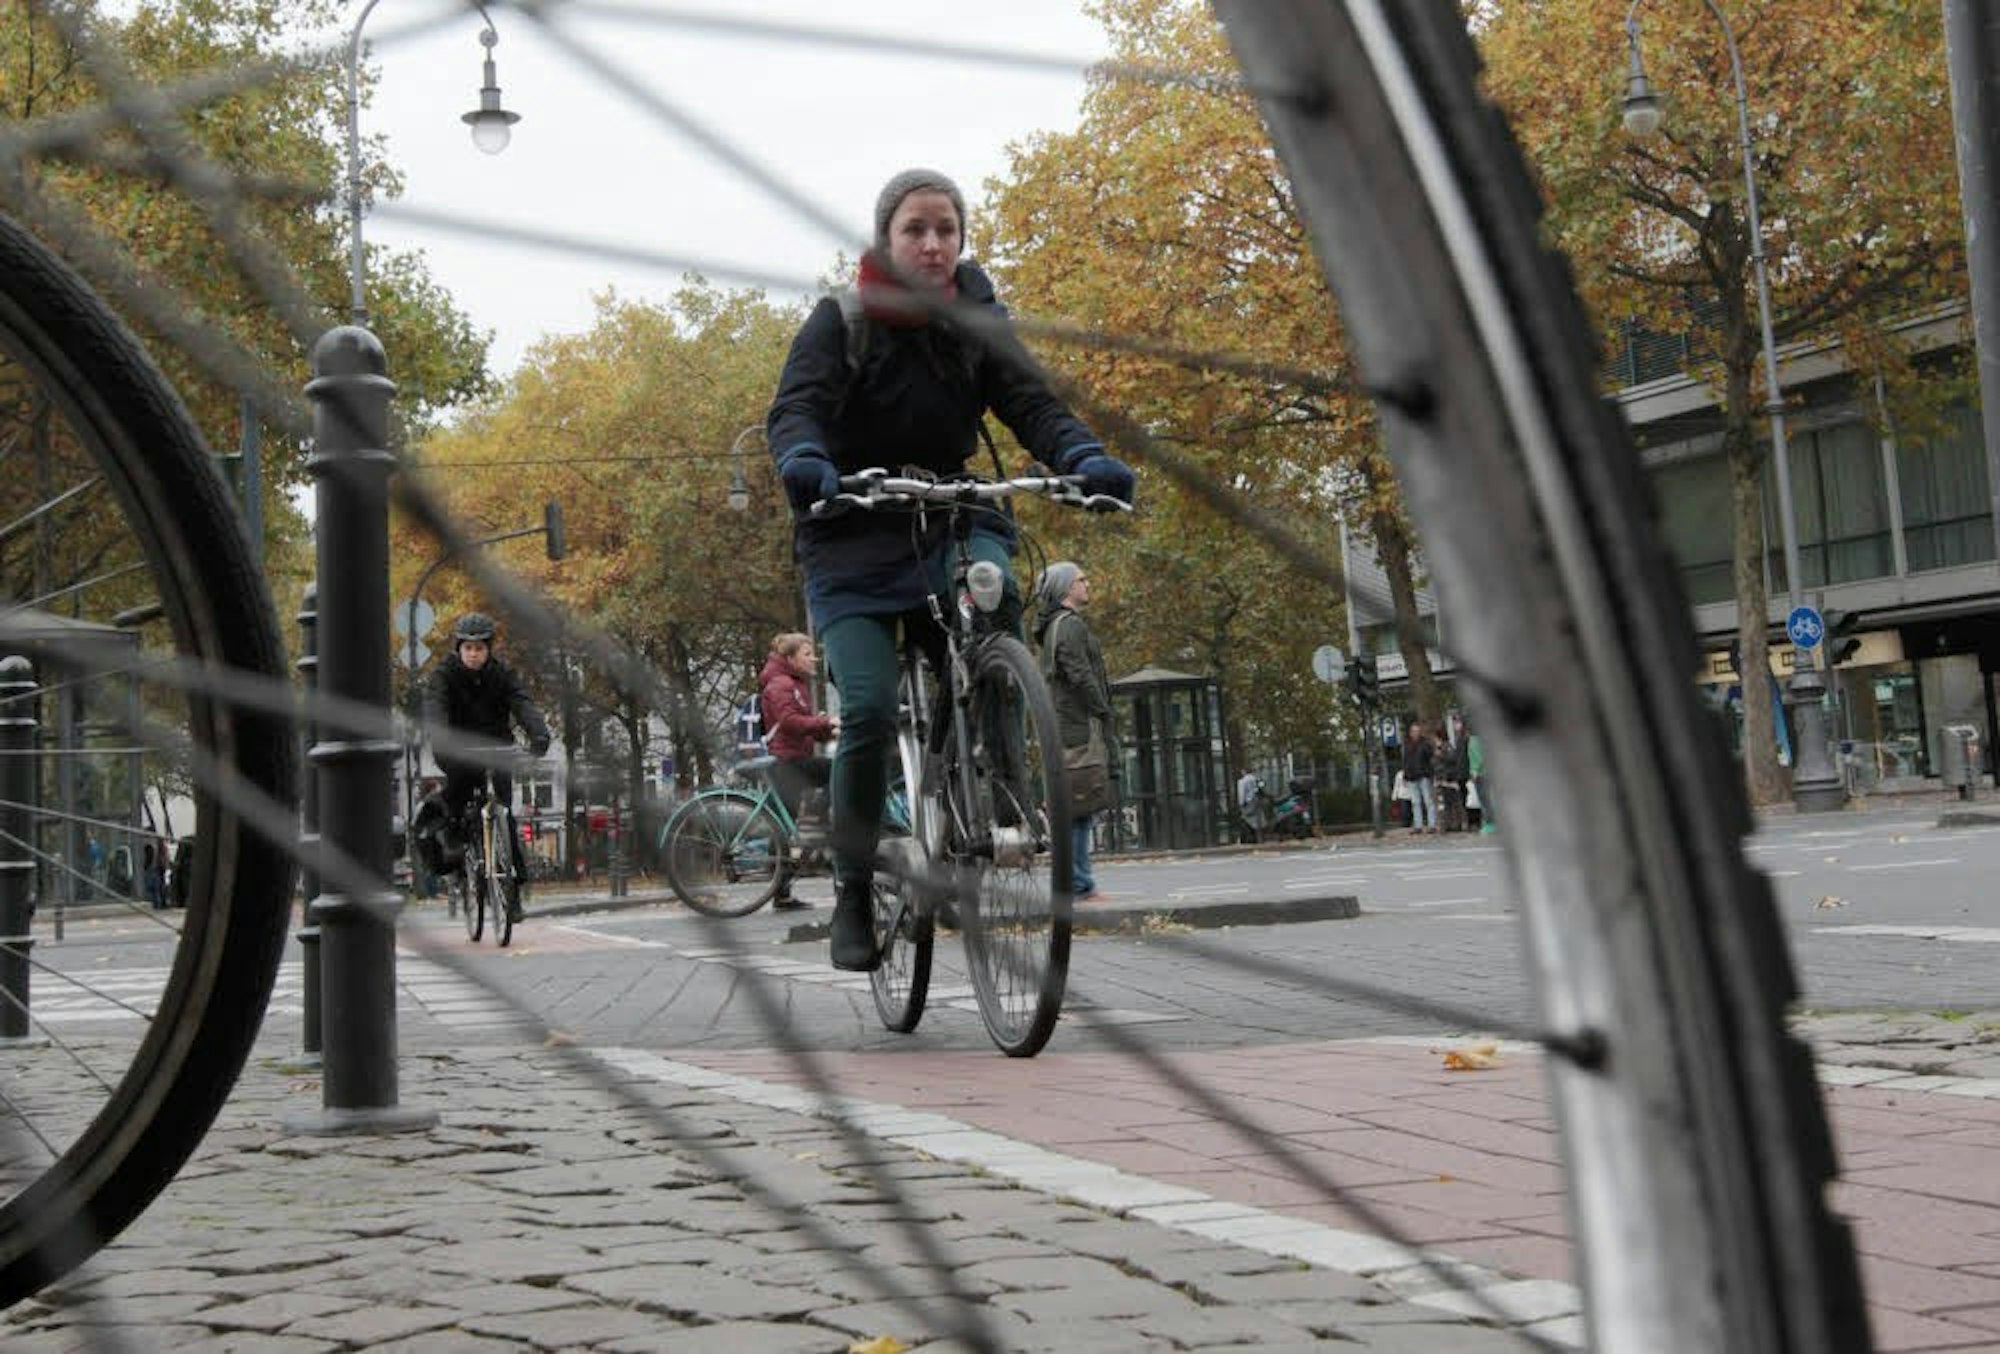 Radler im Stadtzentrum. Wenn mehr Menschen das Fahrrad nutzen würden, könnte das das die gesamte Verkehrssituation entspannen.